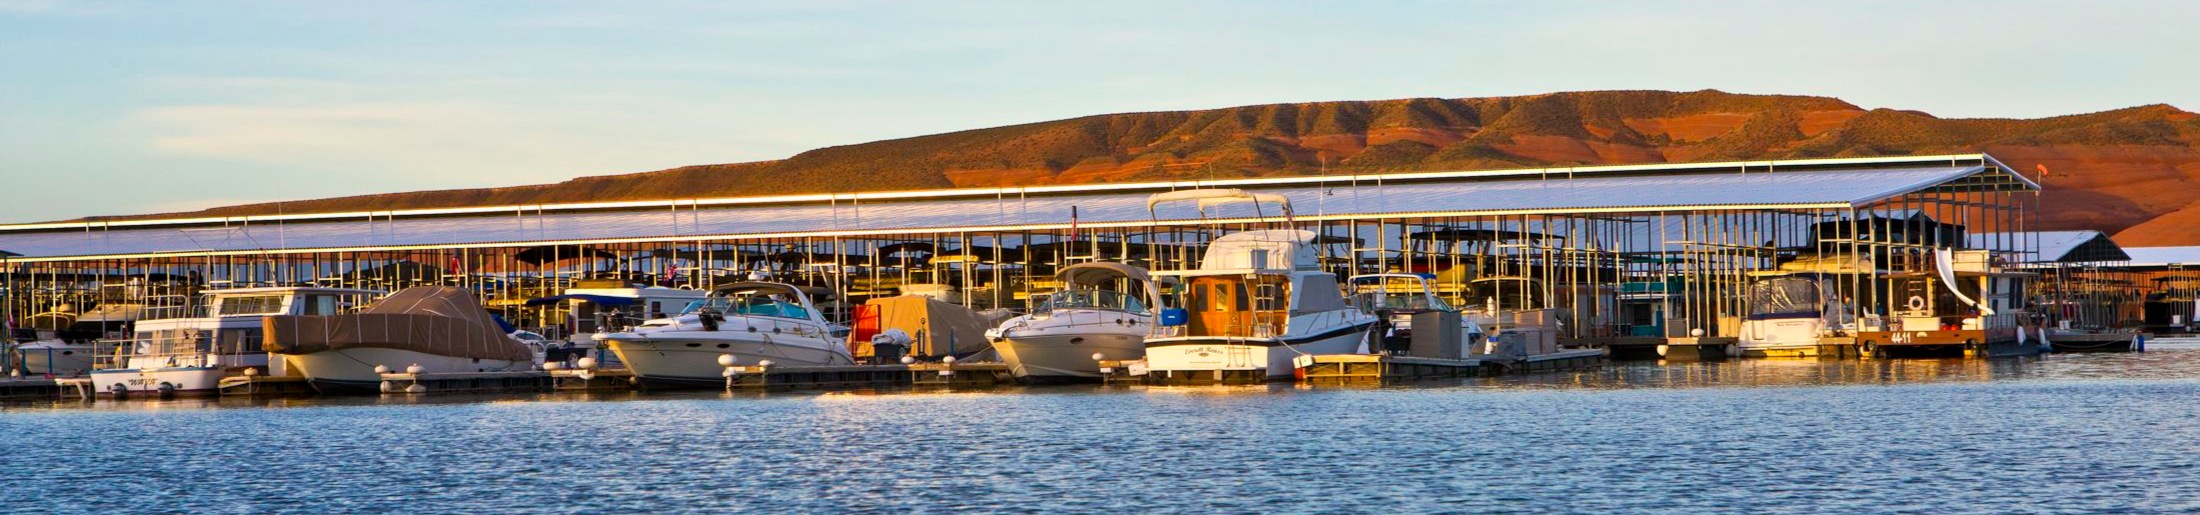 Covered Boat Slips at Bullfrog Marina on Lake Powell